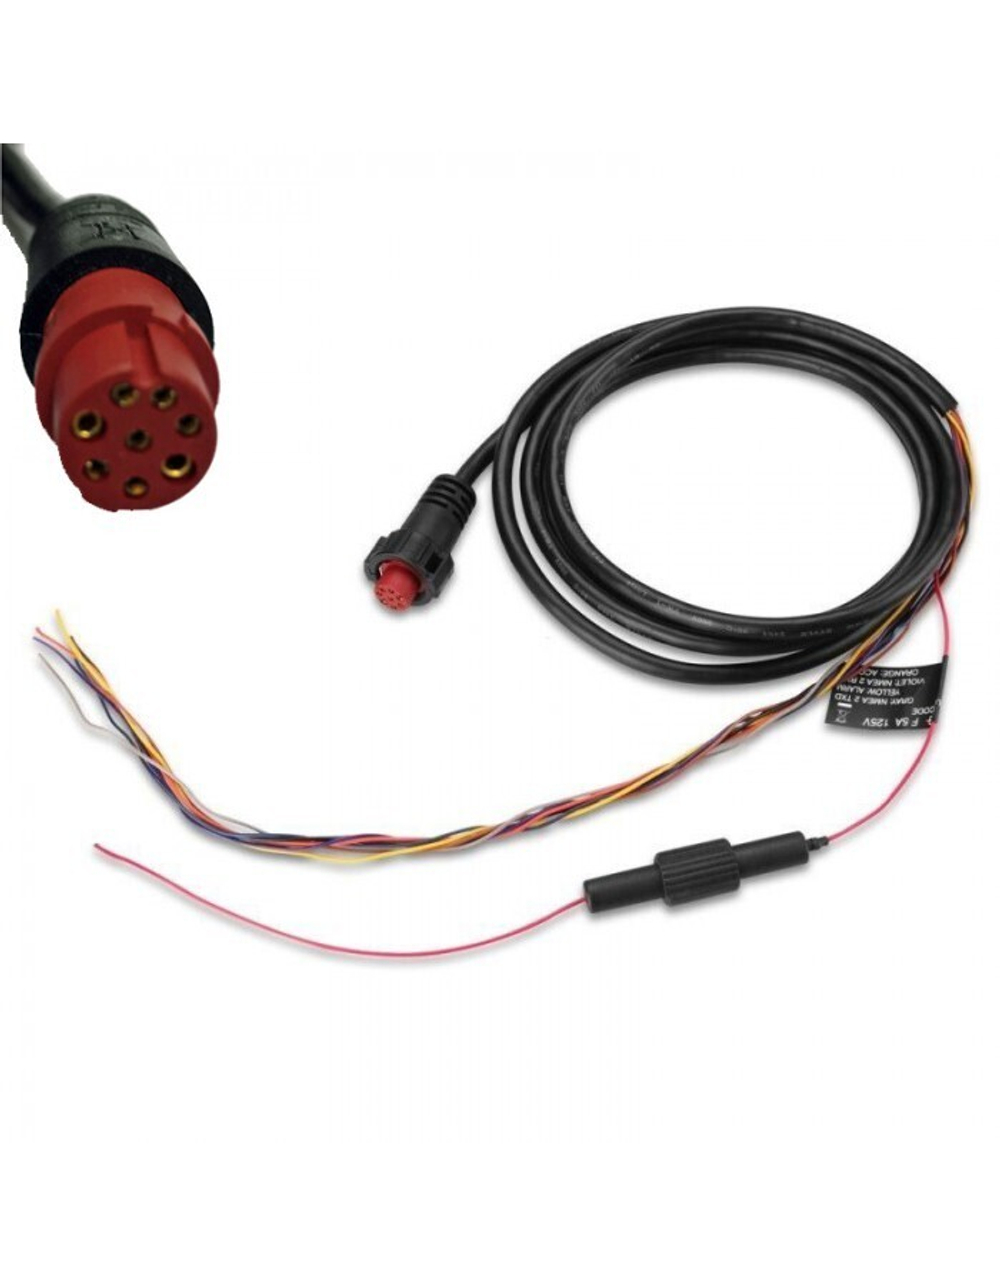 Garmin ECHOMAP 50, 70 / GPSMAP 5х7, 7х1 8-PIN кабель питания (010-11970-00)